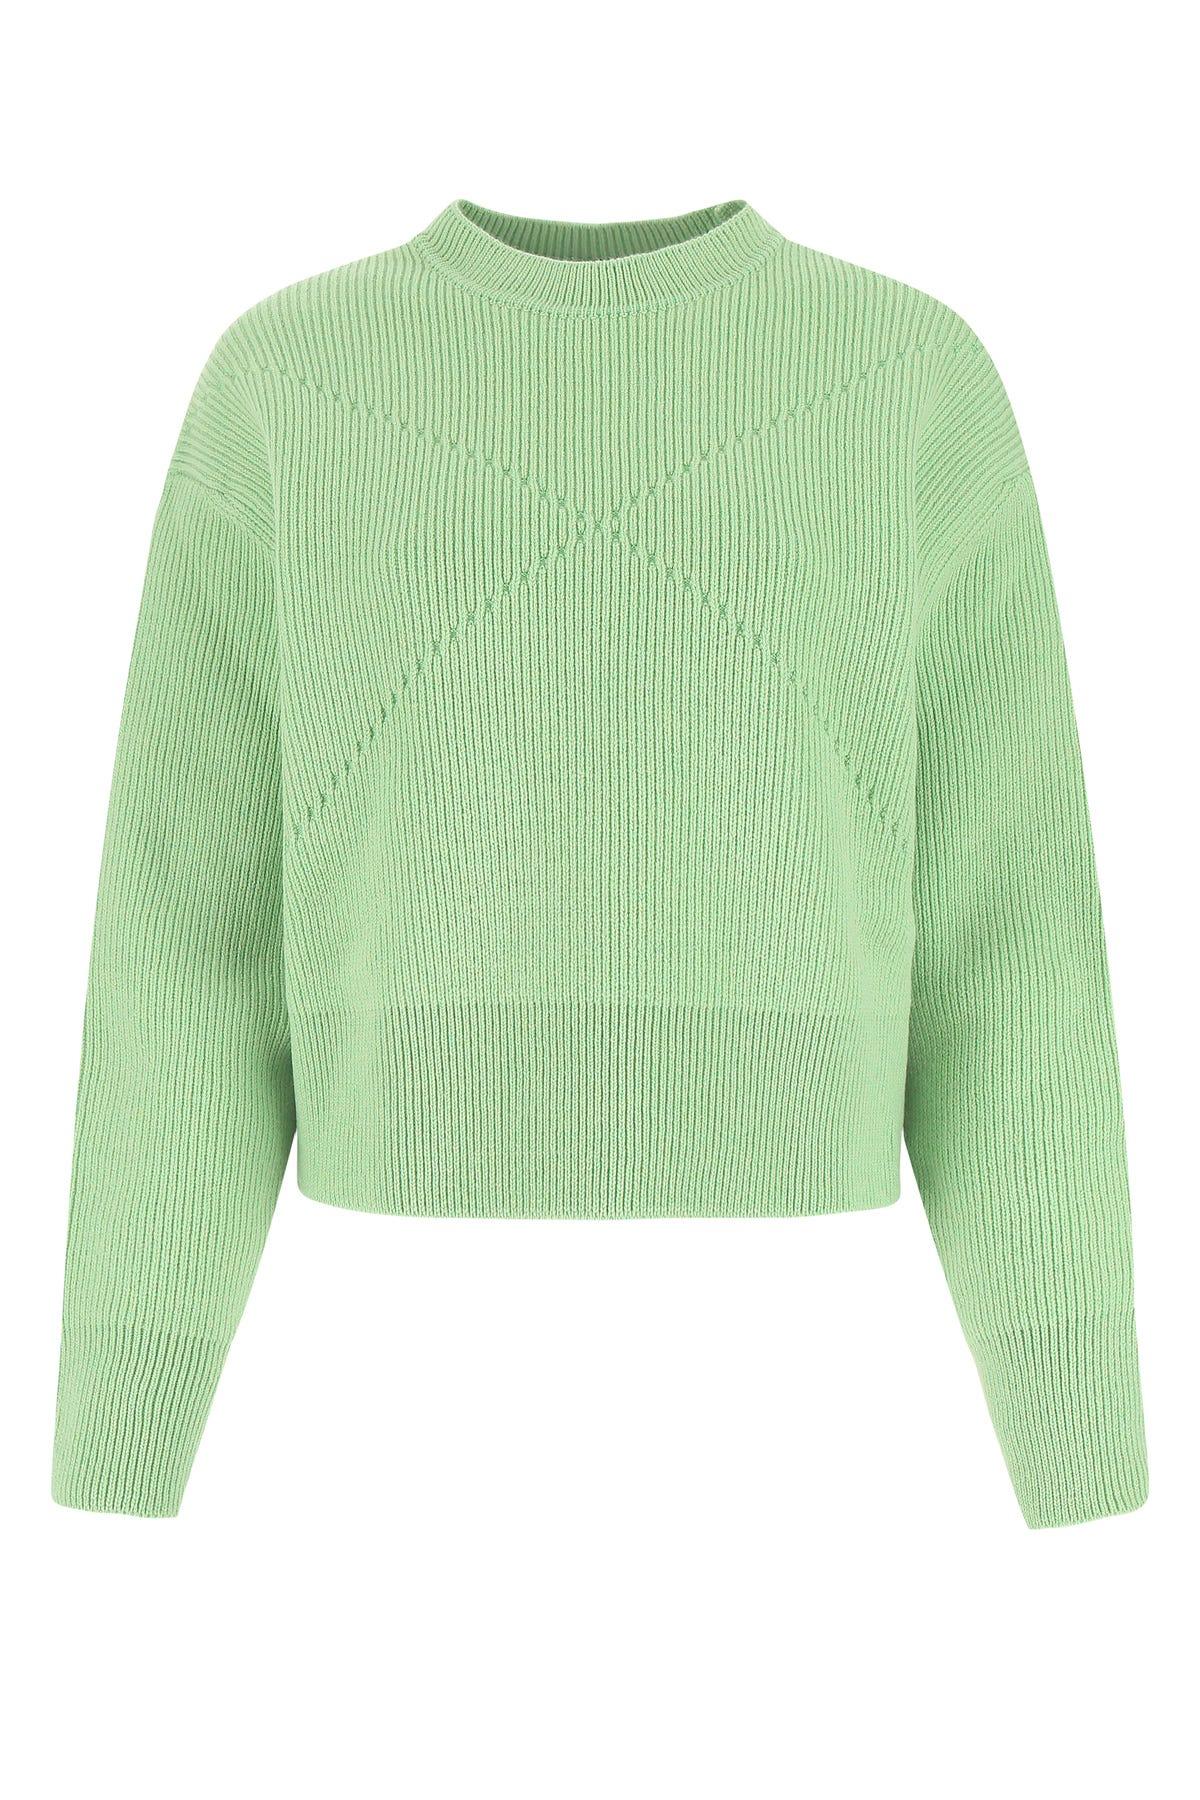 Bottega Veneta Knitwear in Green | Lyst